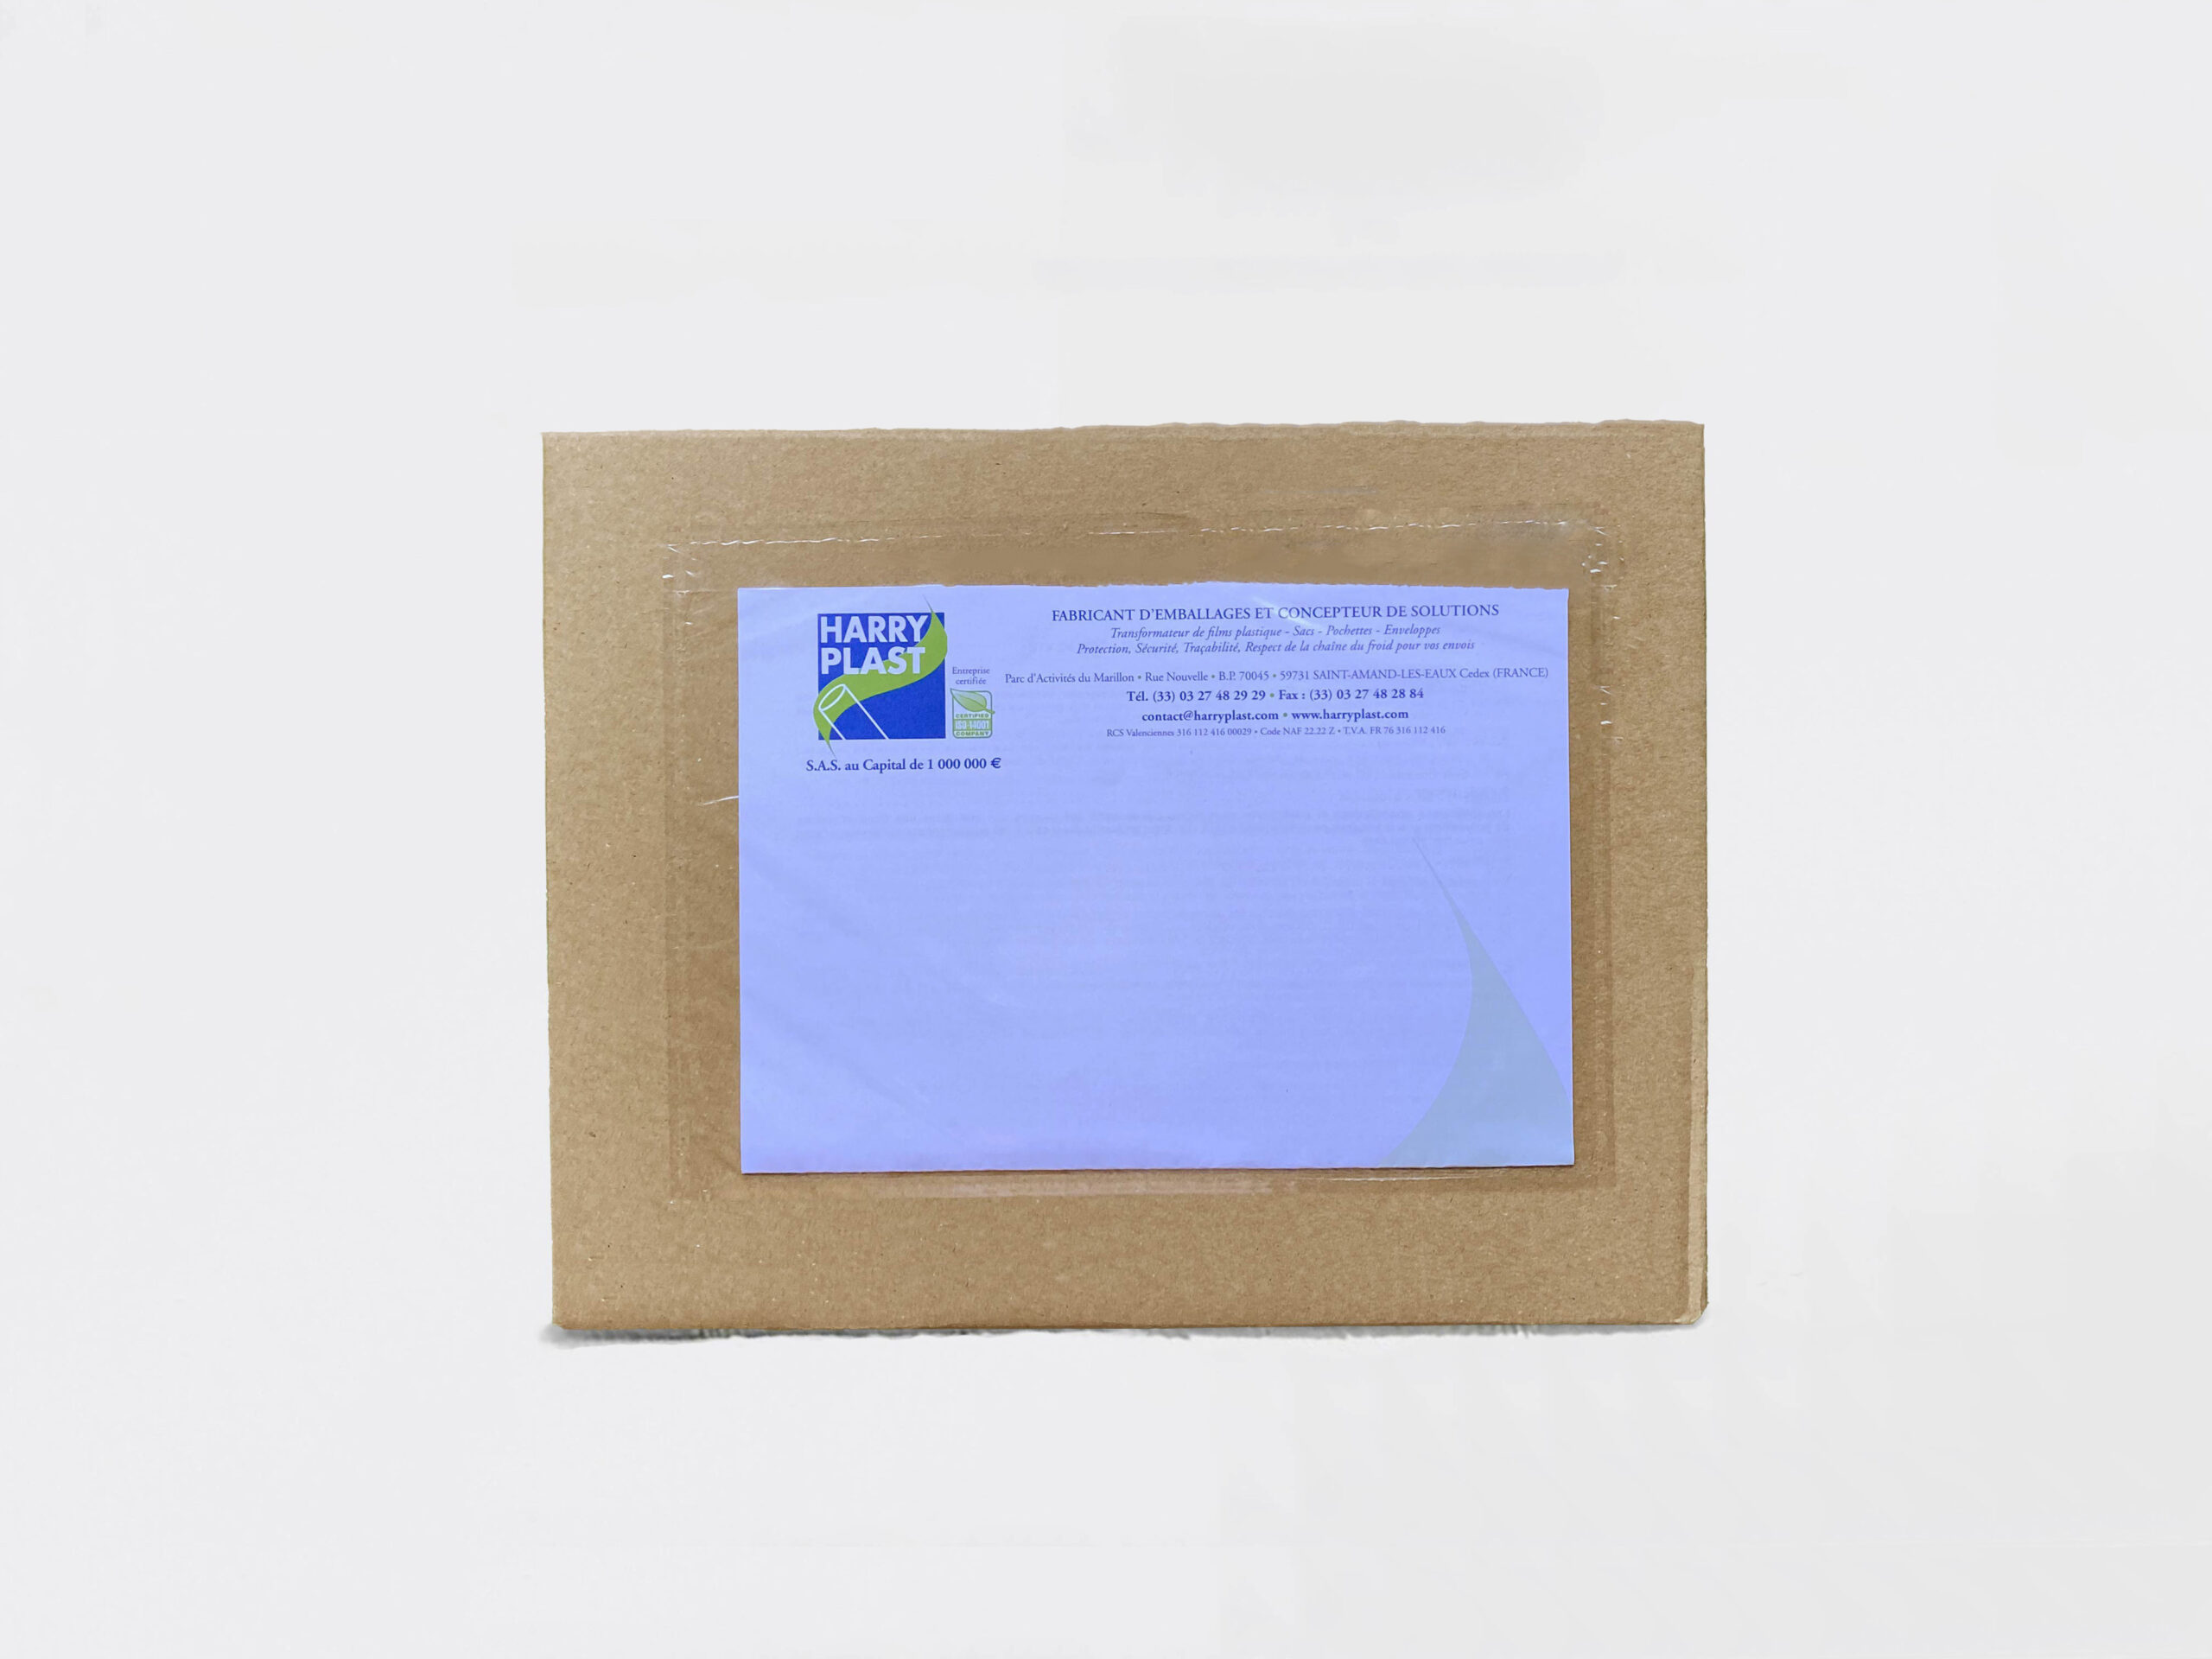 Kit emballage colis Vinted - lot de 30 enveloppes plastiques (10 enveloppes  x 3 formats) + 30 pochettes porte-documents - Harry plast